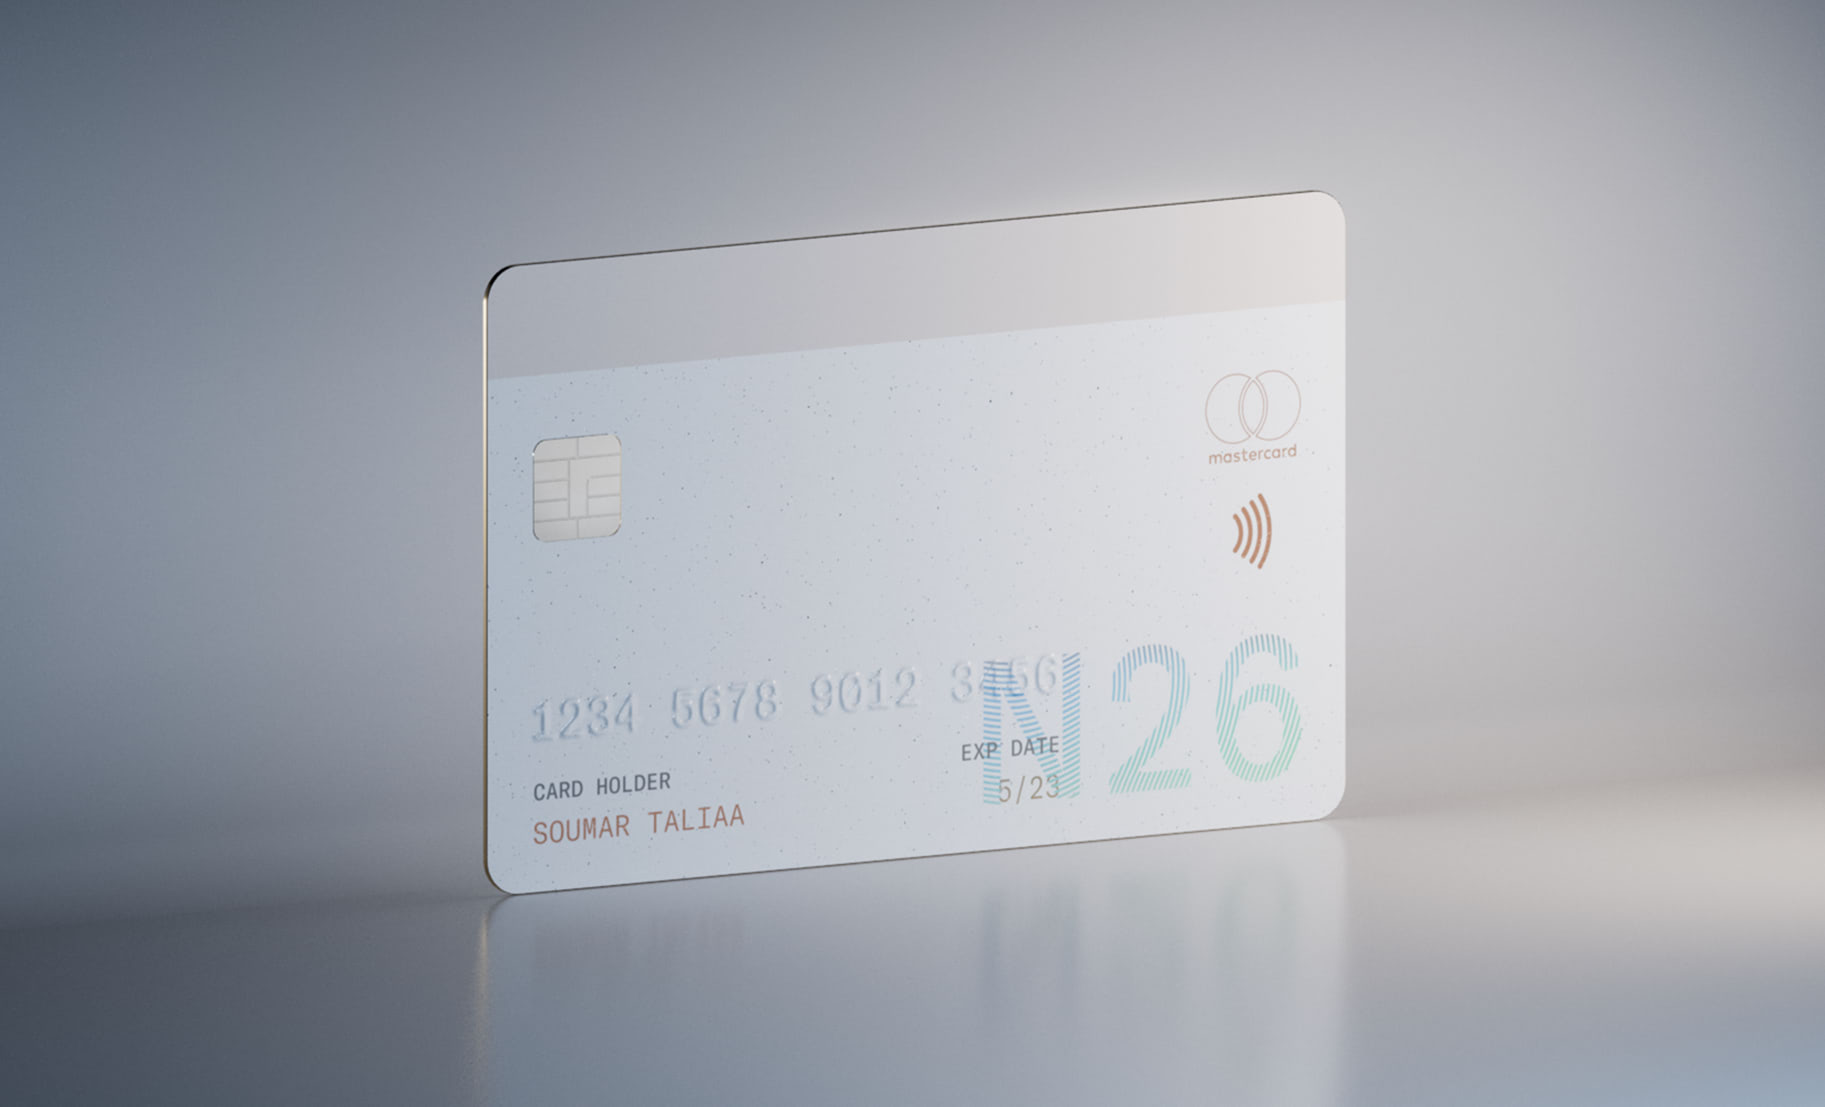 N26 Credit Card